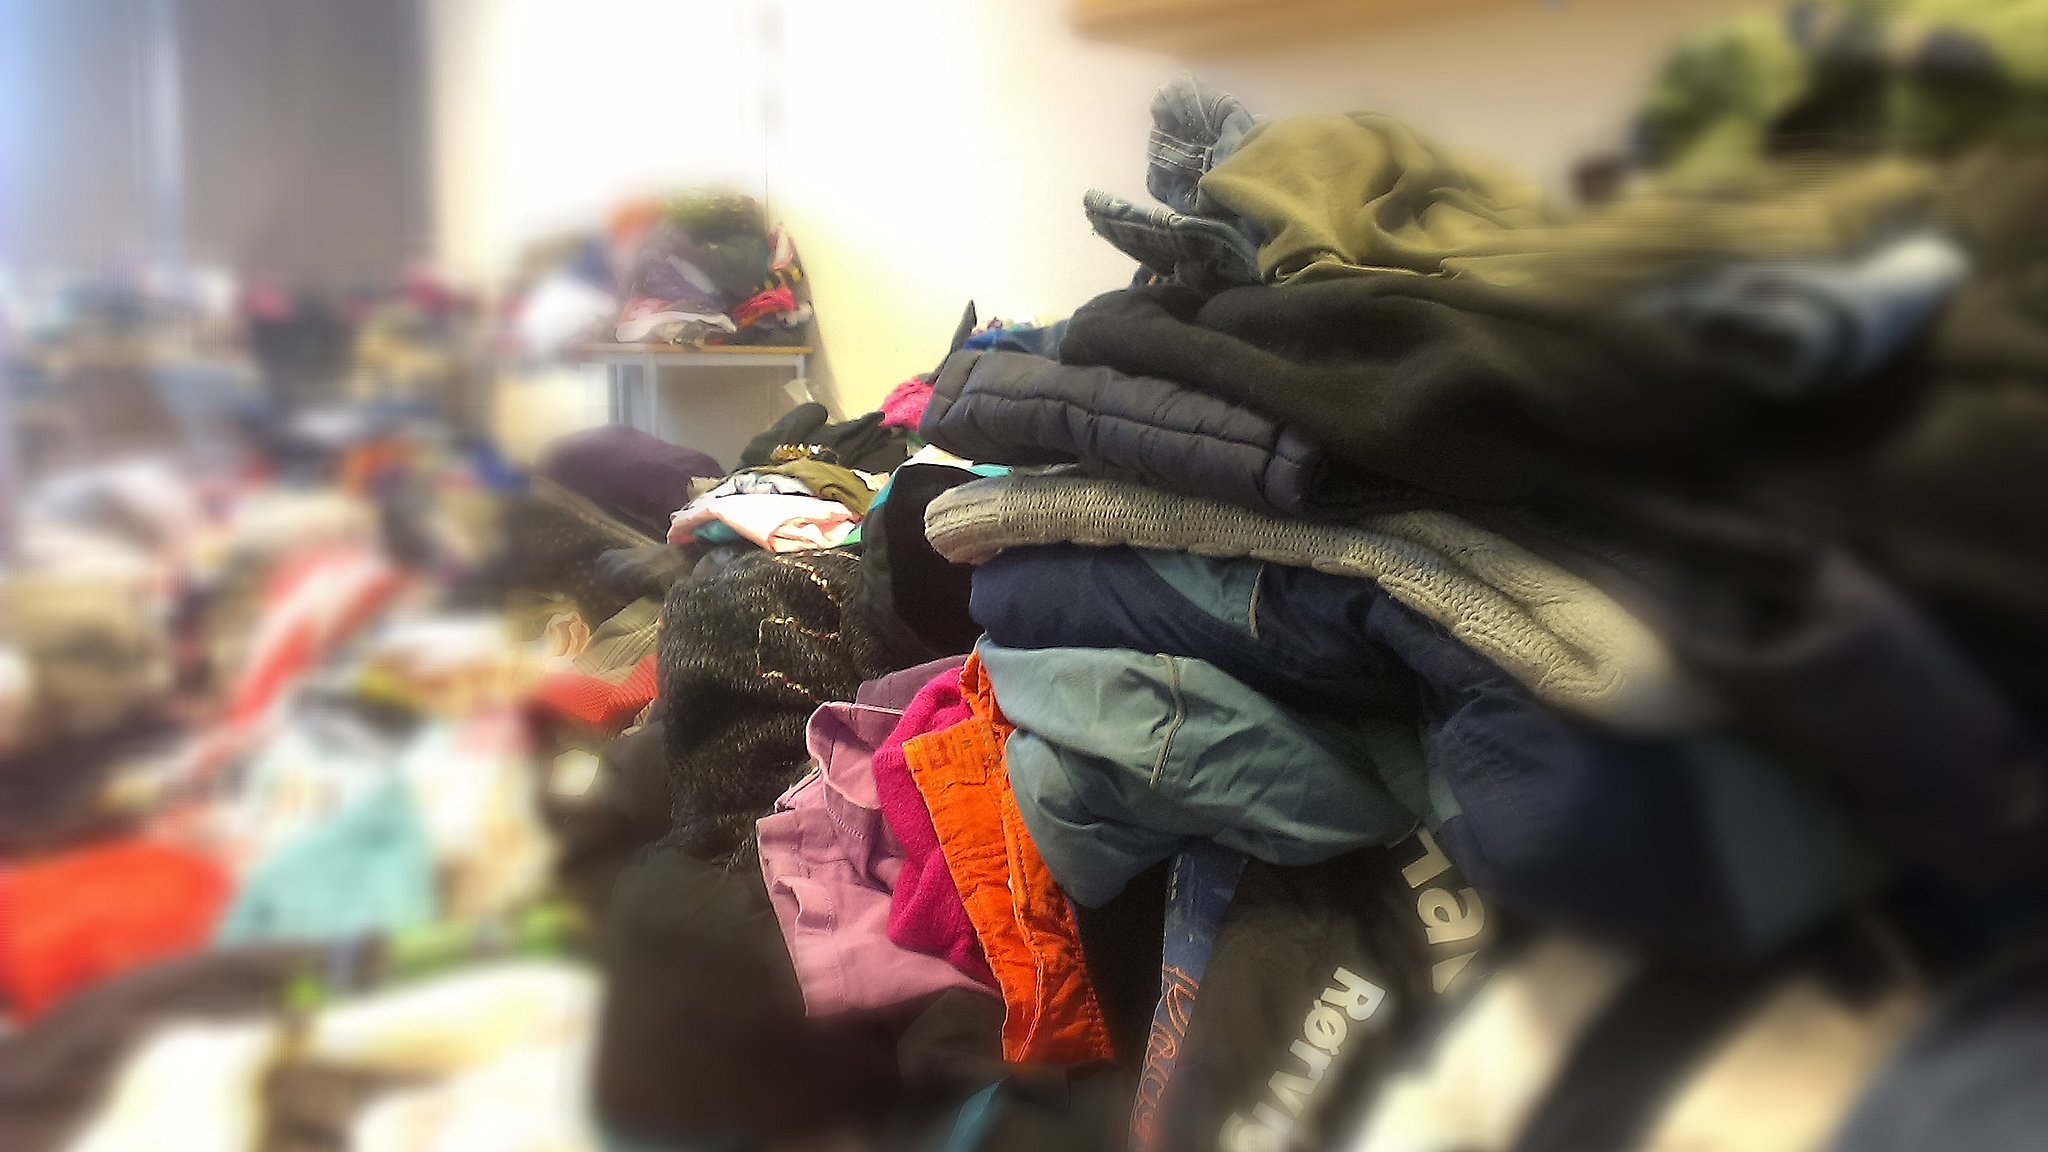 Masser af tøj, skoletasker indsamlet til flygtninge i Holbæk | TV2 ØST